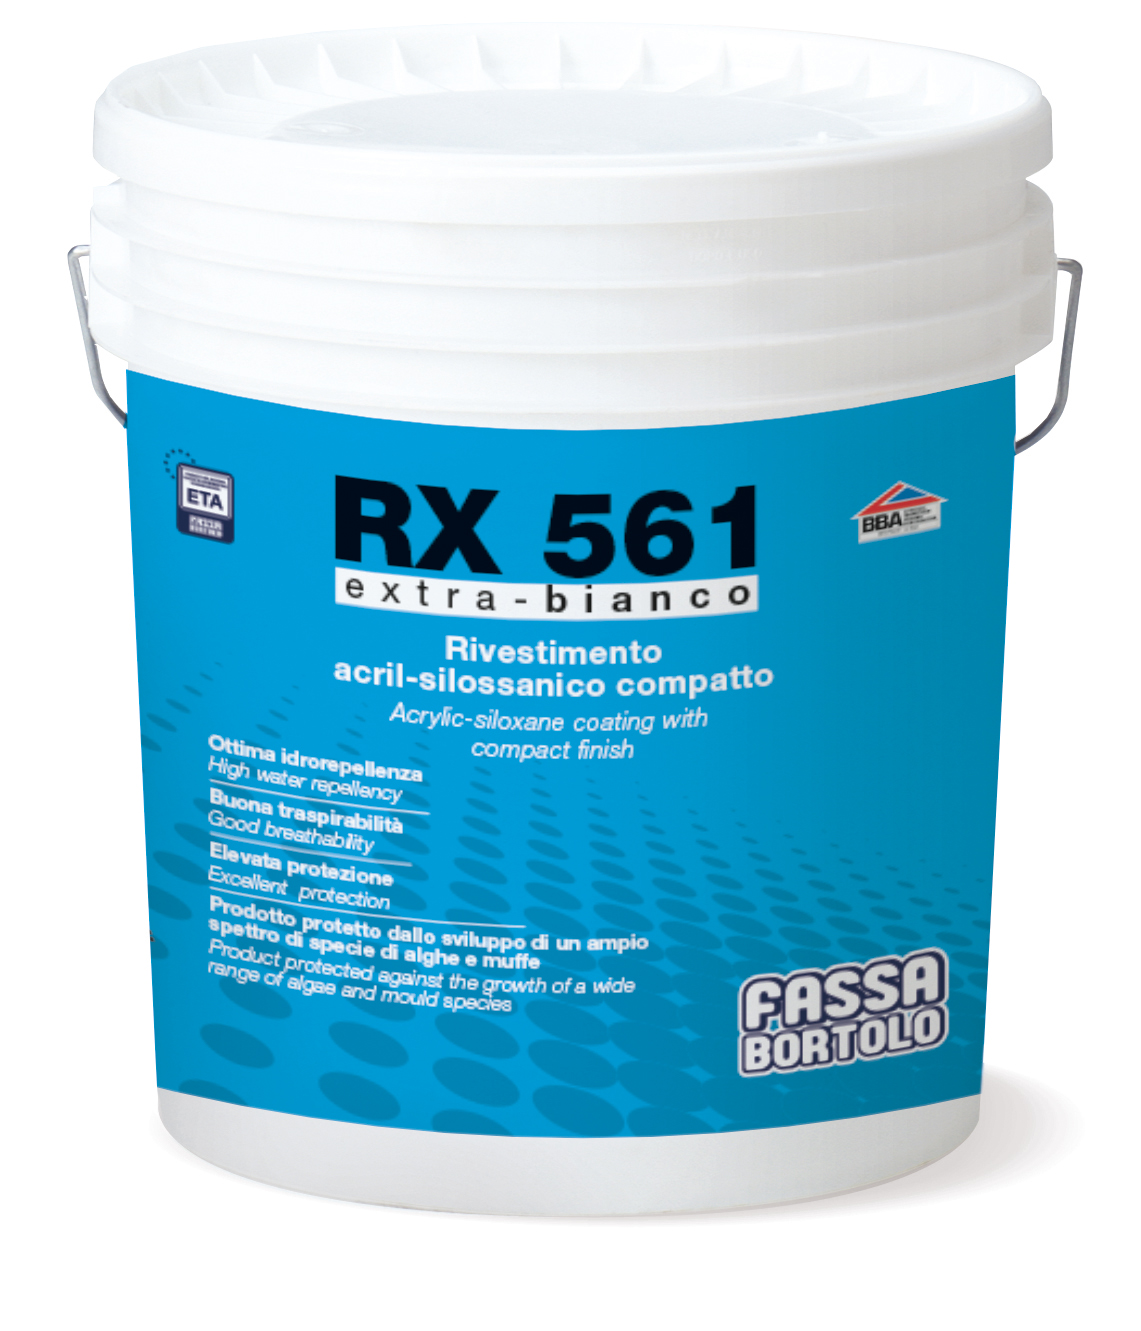 RX 561: Rivestimento acril-silossanico rustico